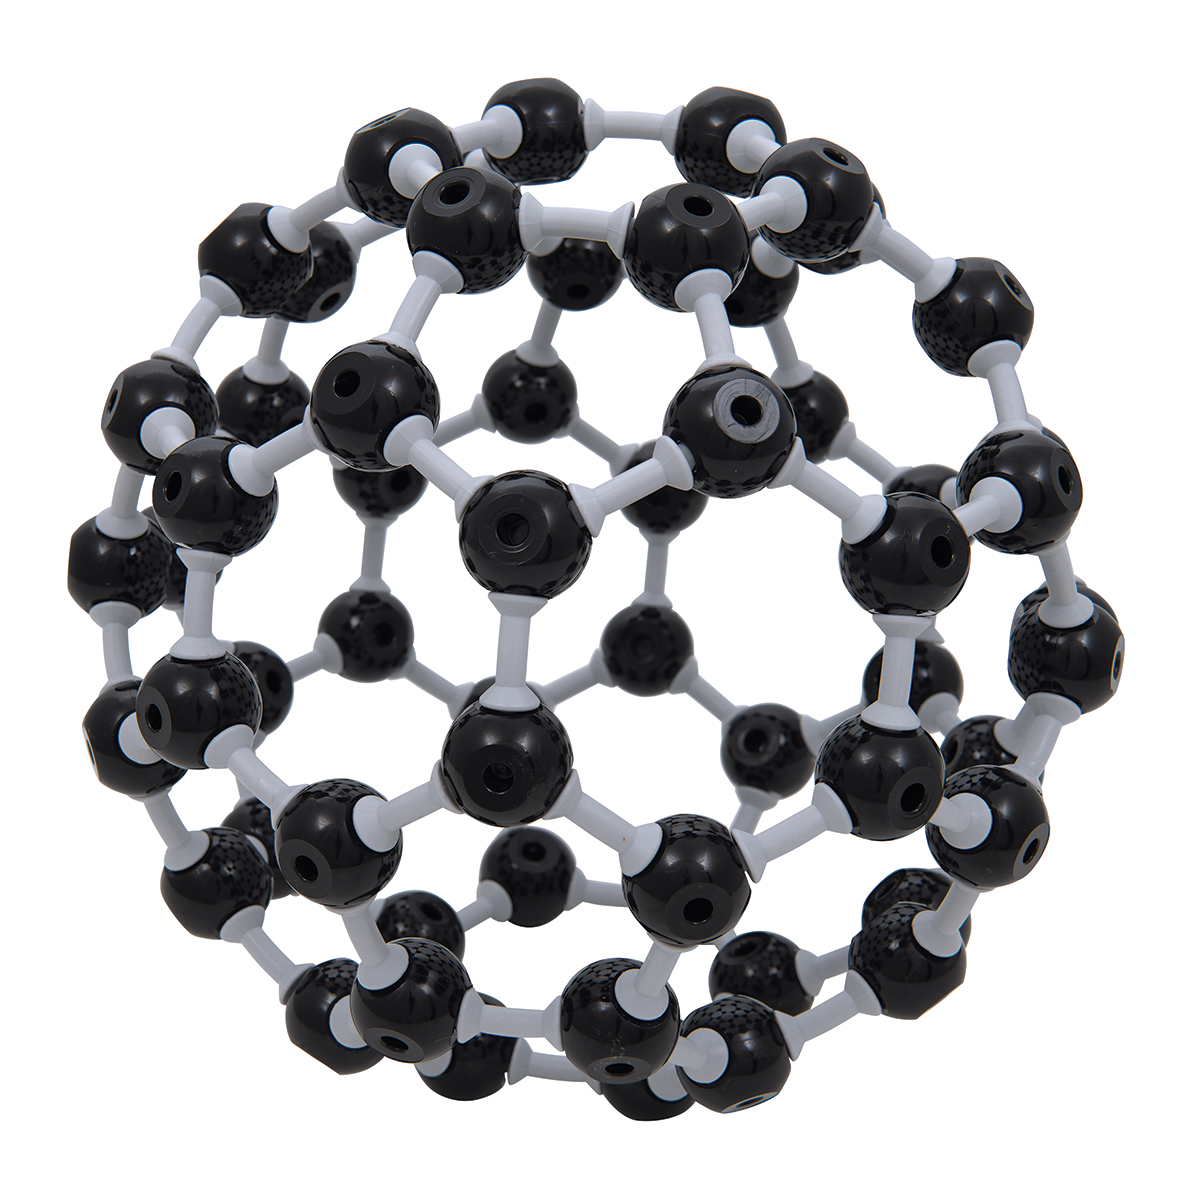 the structure of buckminsterfullerene